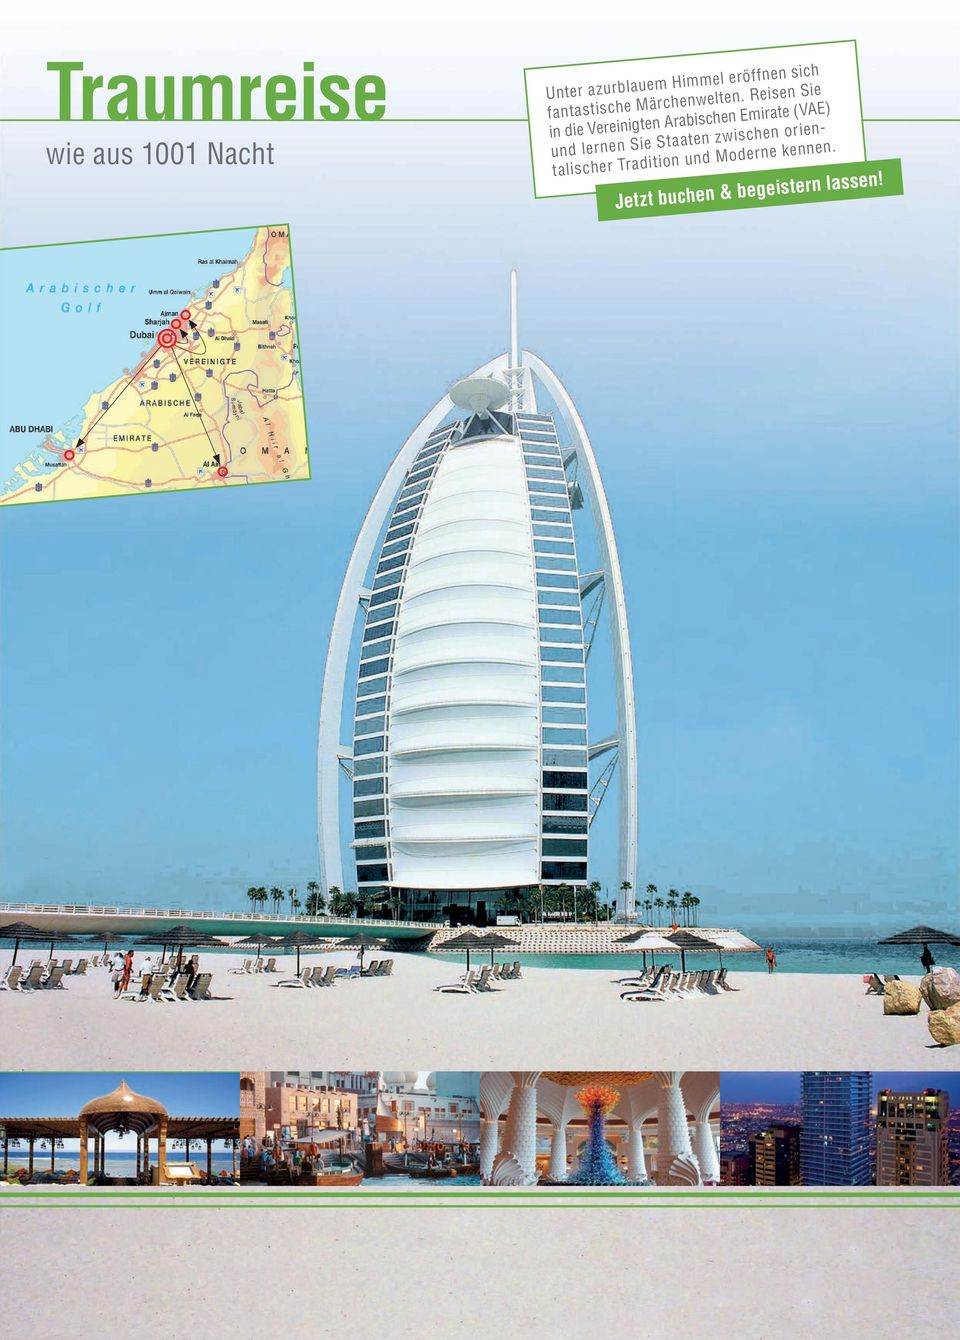 Reisen Sie in die Vereinigten Arabischen Emirate (VAE) und lernen